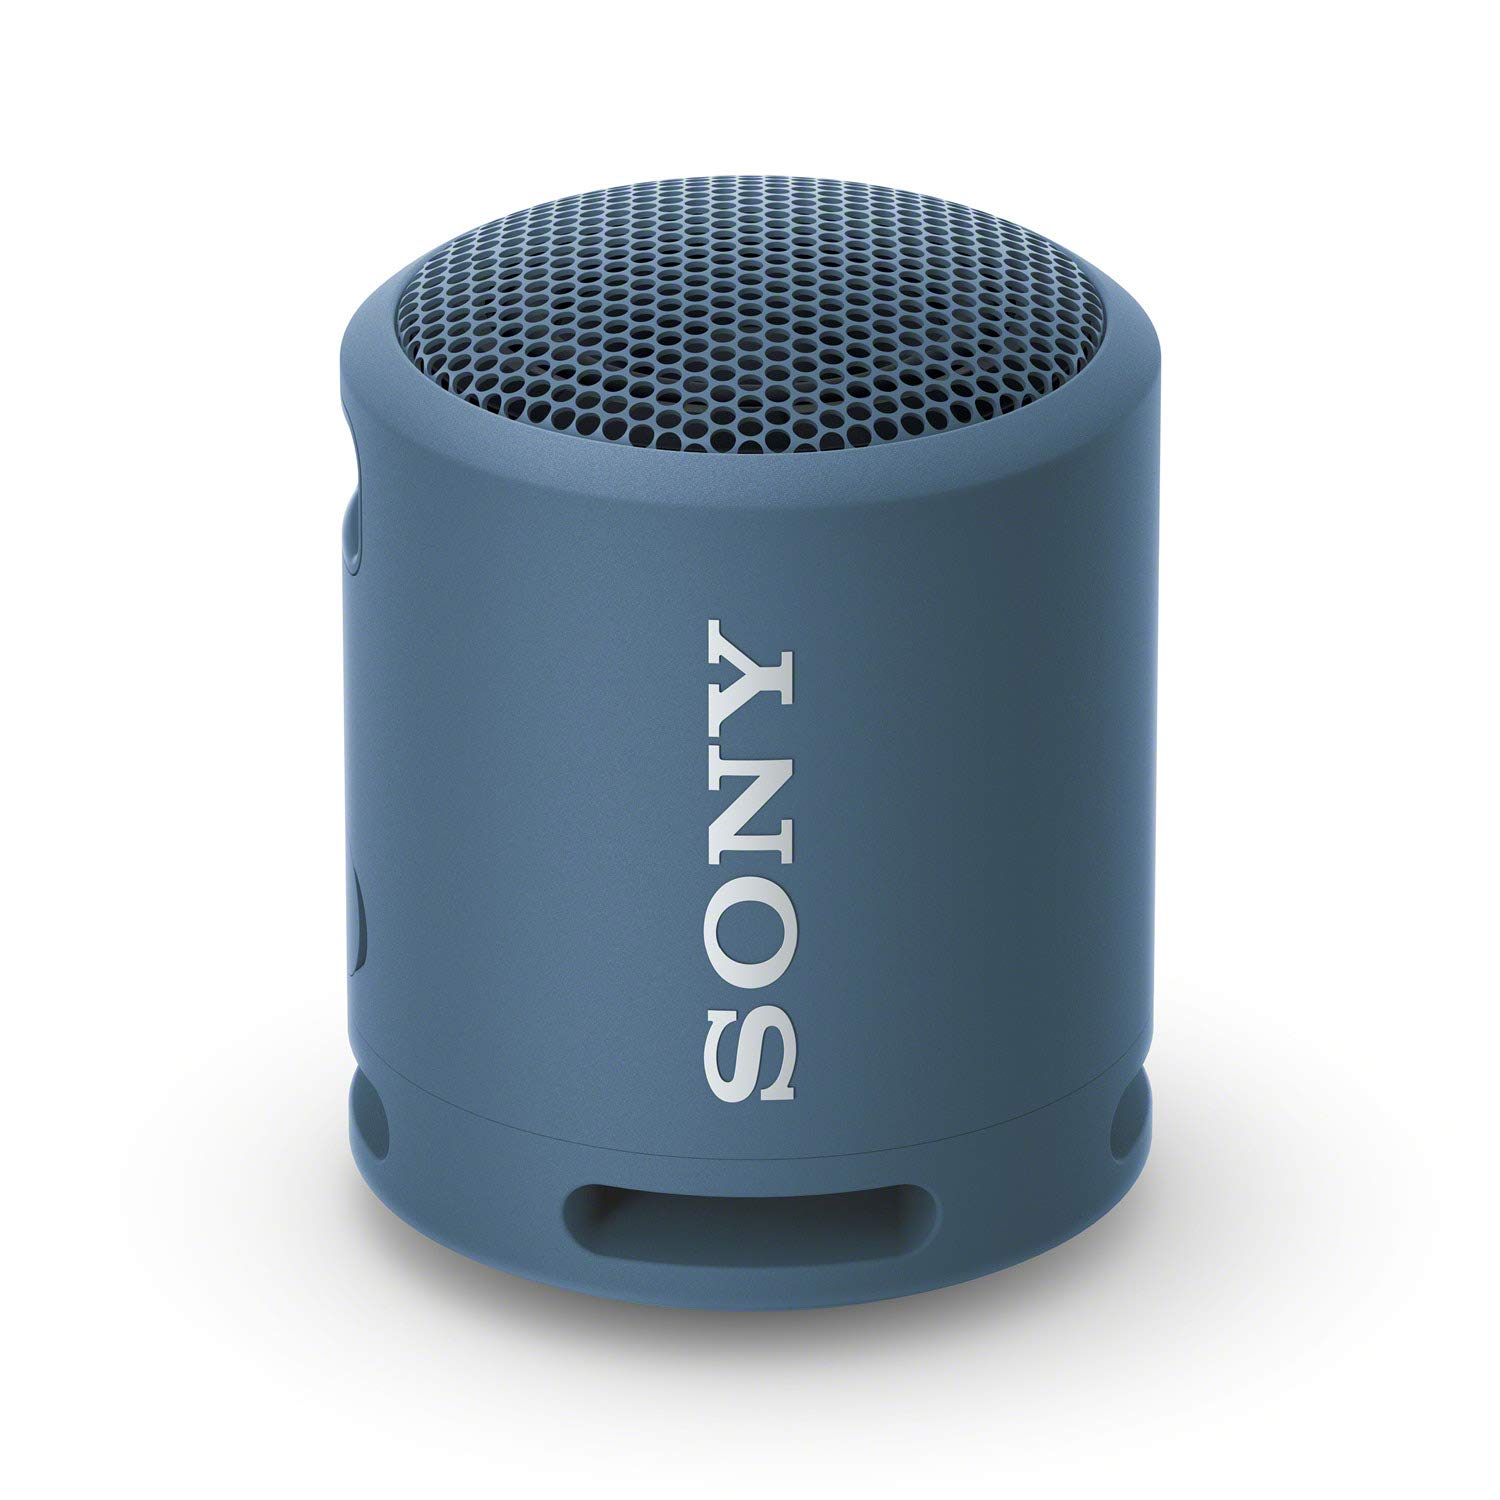 Amazon Deal: क्रिसमस, न्यू ईयर और हर पार्टी में धूम मचा देंगे ये Sony के Speaker और Sound Bar, ऑफर में 40% कम मेंं खरीदें